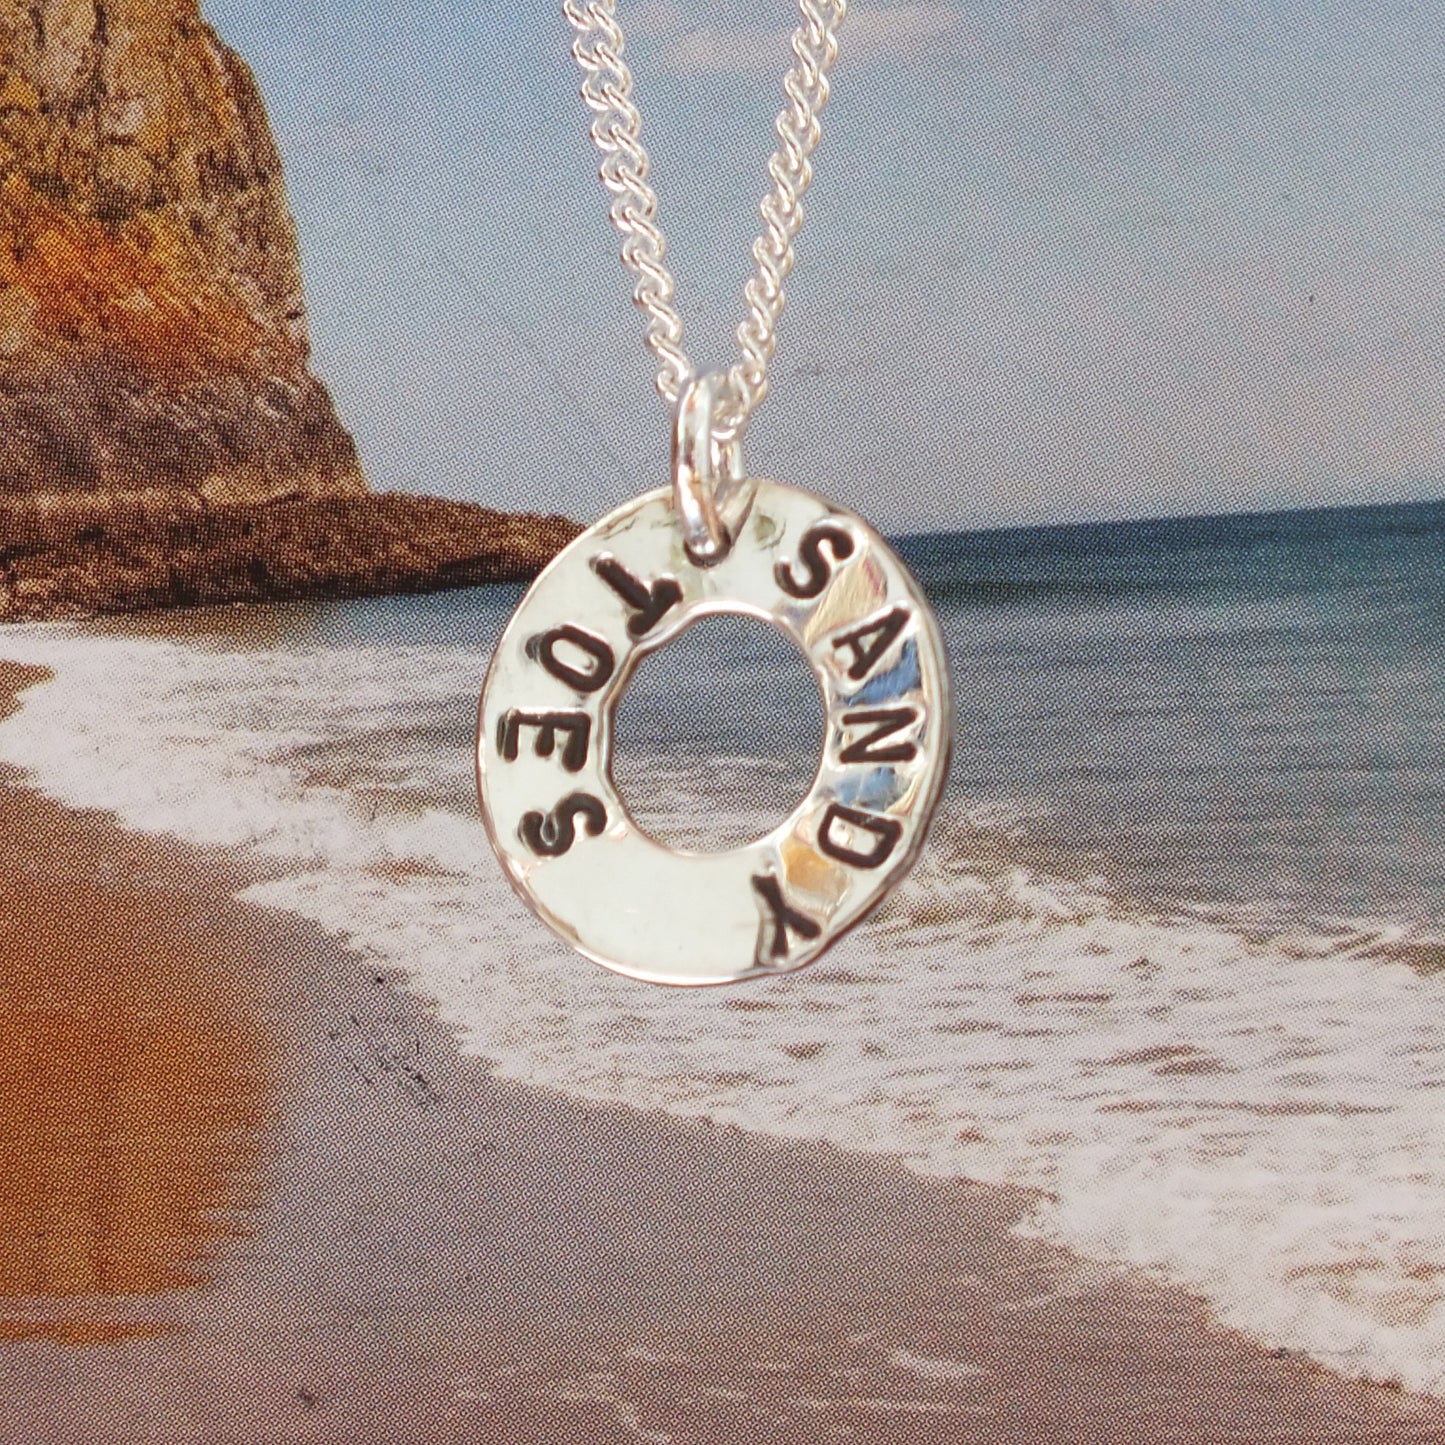 Beach spirit necklaces